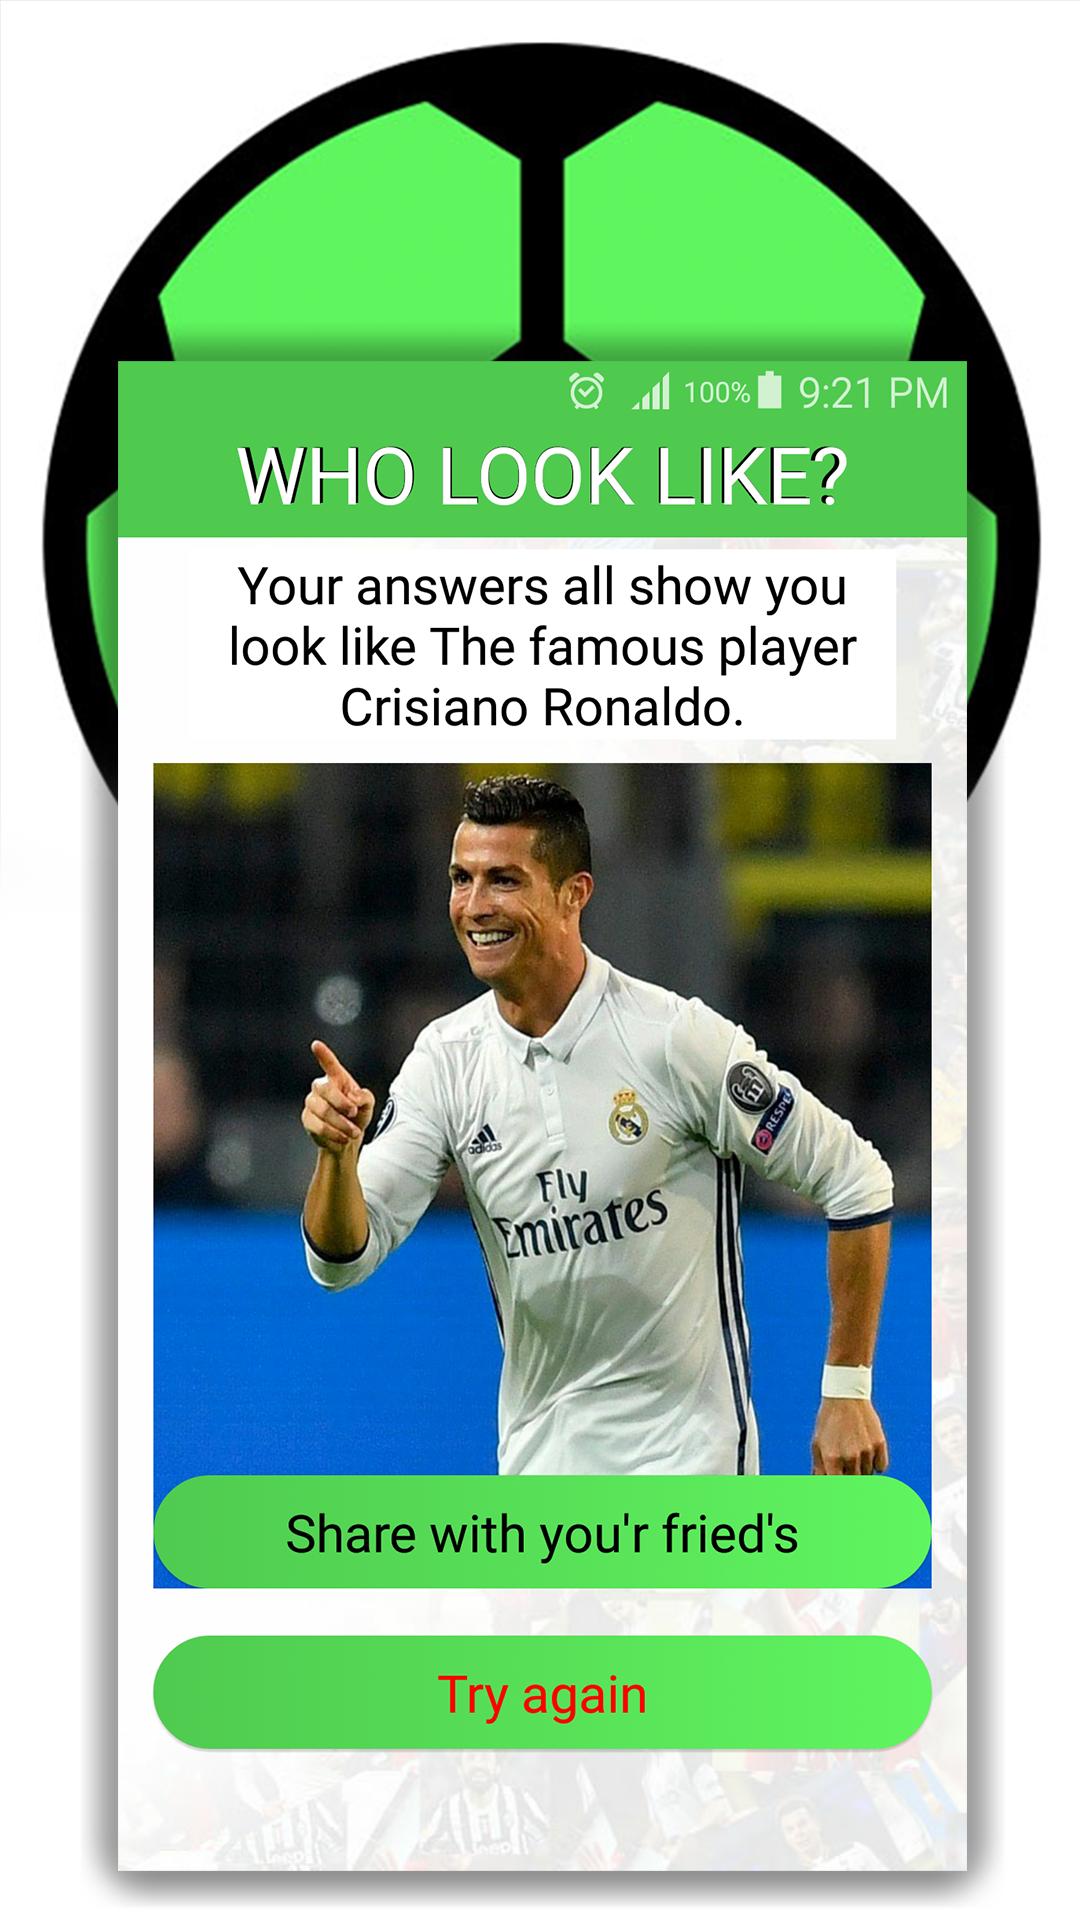 من تشبه من لاعبي كرة القدم؟ for Android - APK Download